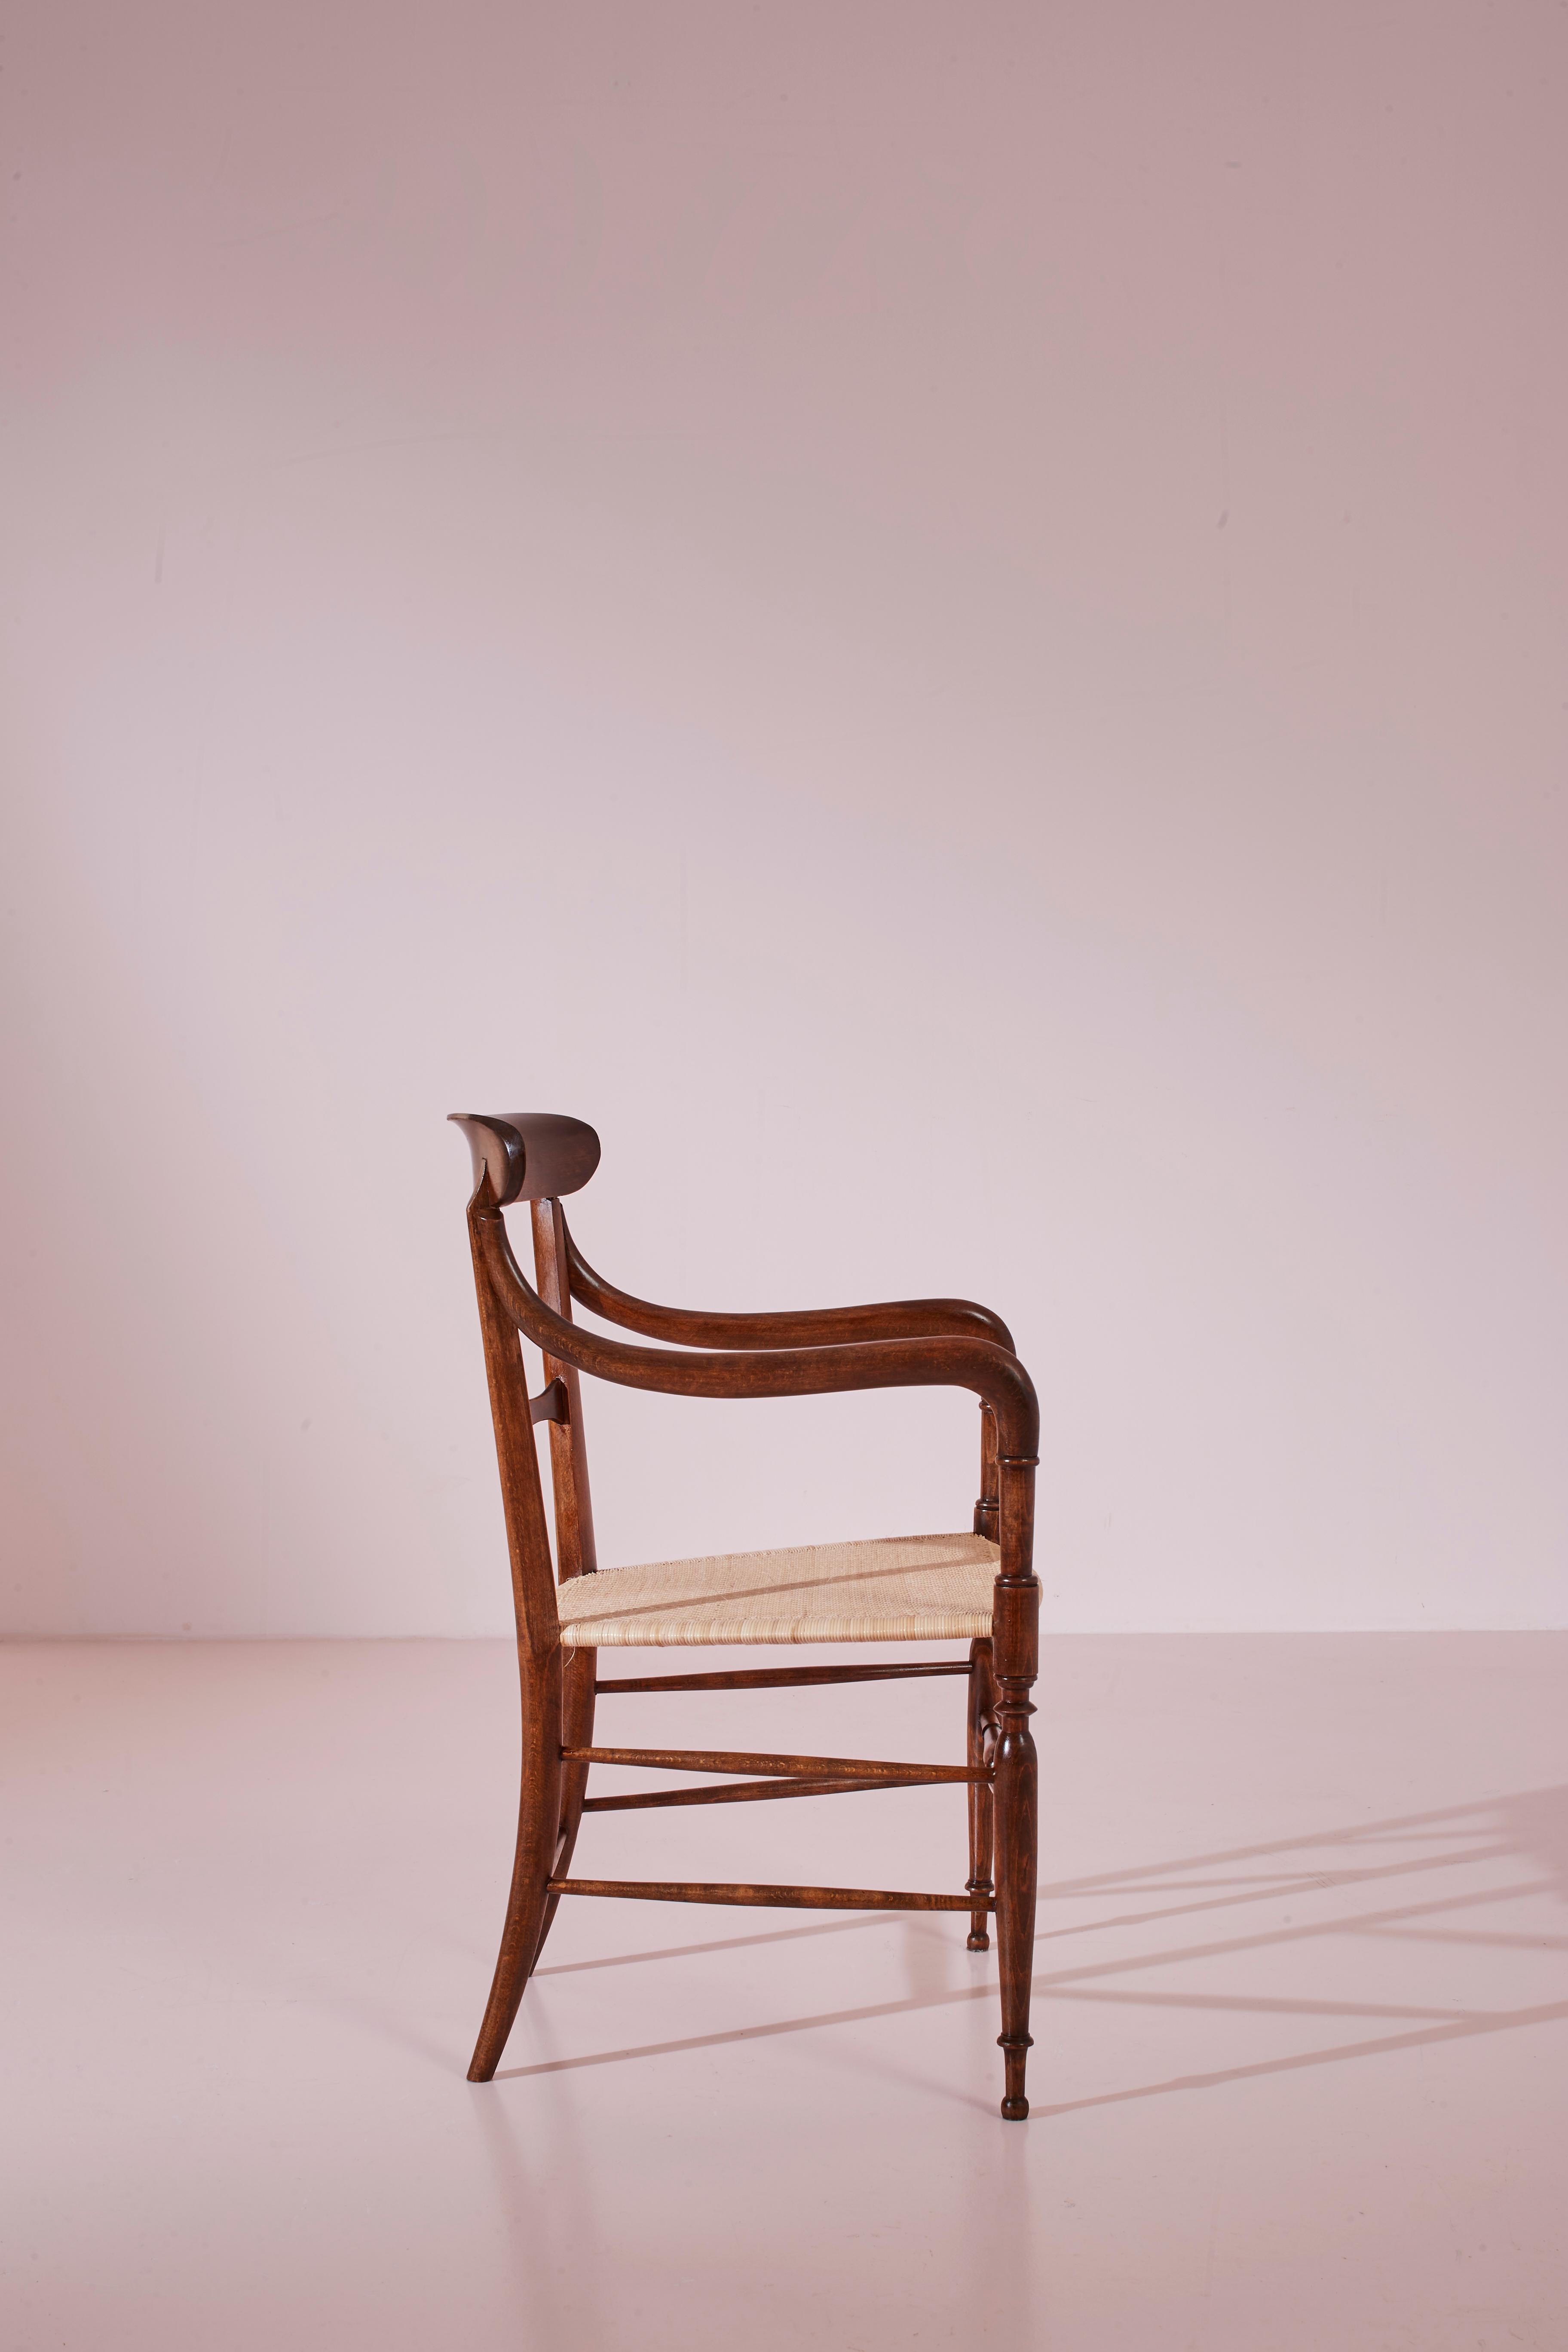 Modell Campanino-Sessel von Guido Chiappe, Buchenholz und Schilfrohr, Chiavari 1950er Jahre (Gehstock) im Angebot